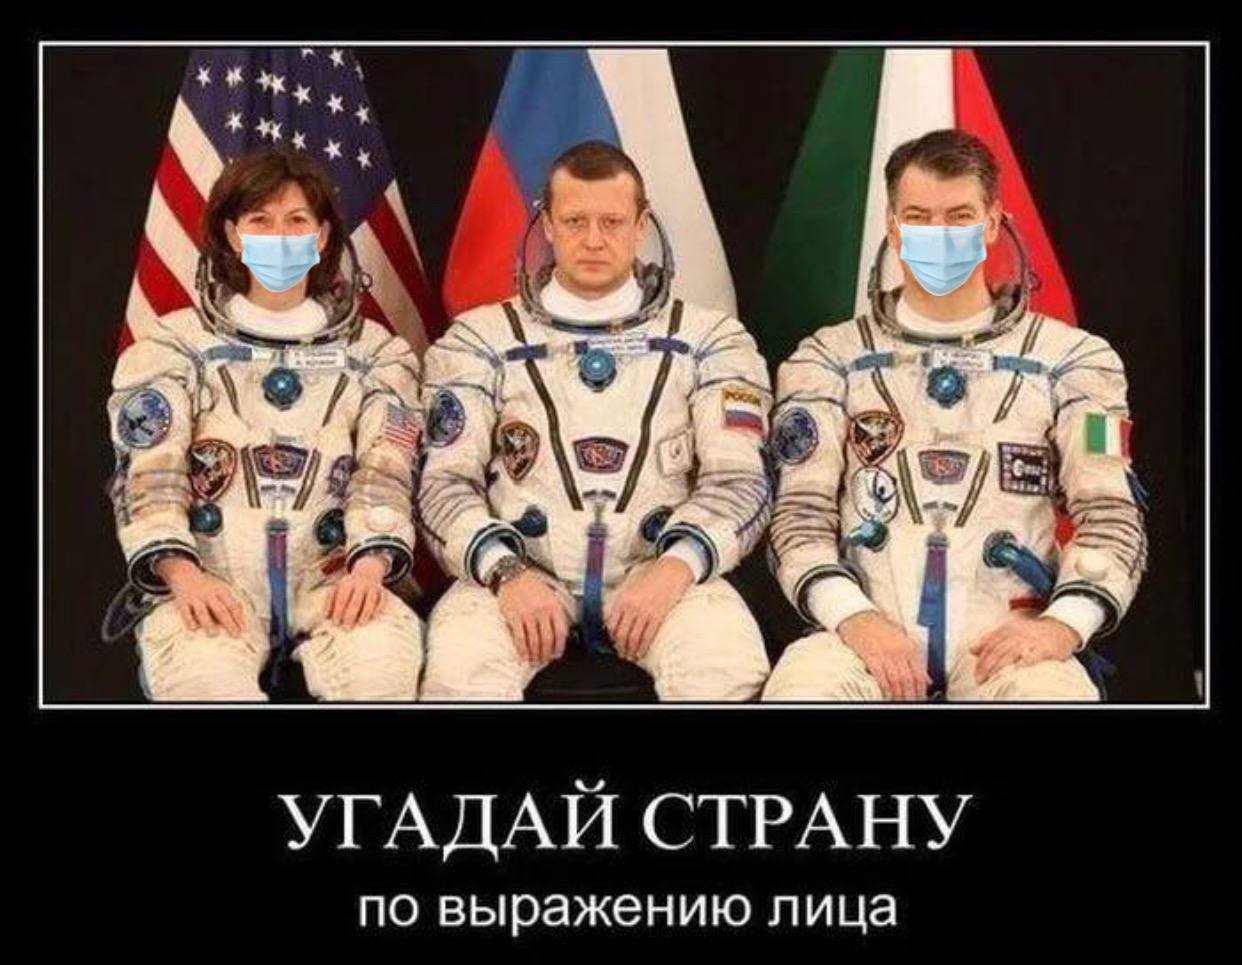 Русский космонавт не улыбается